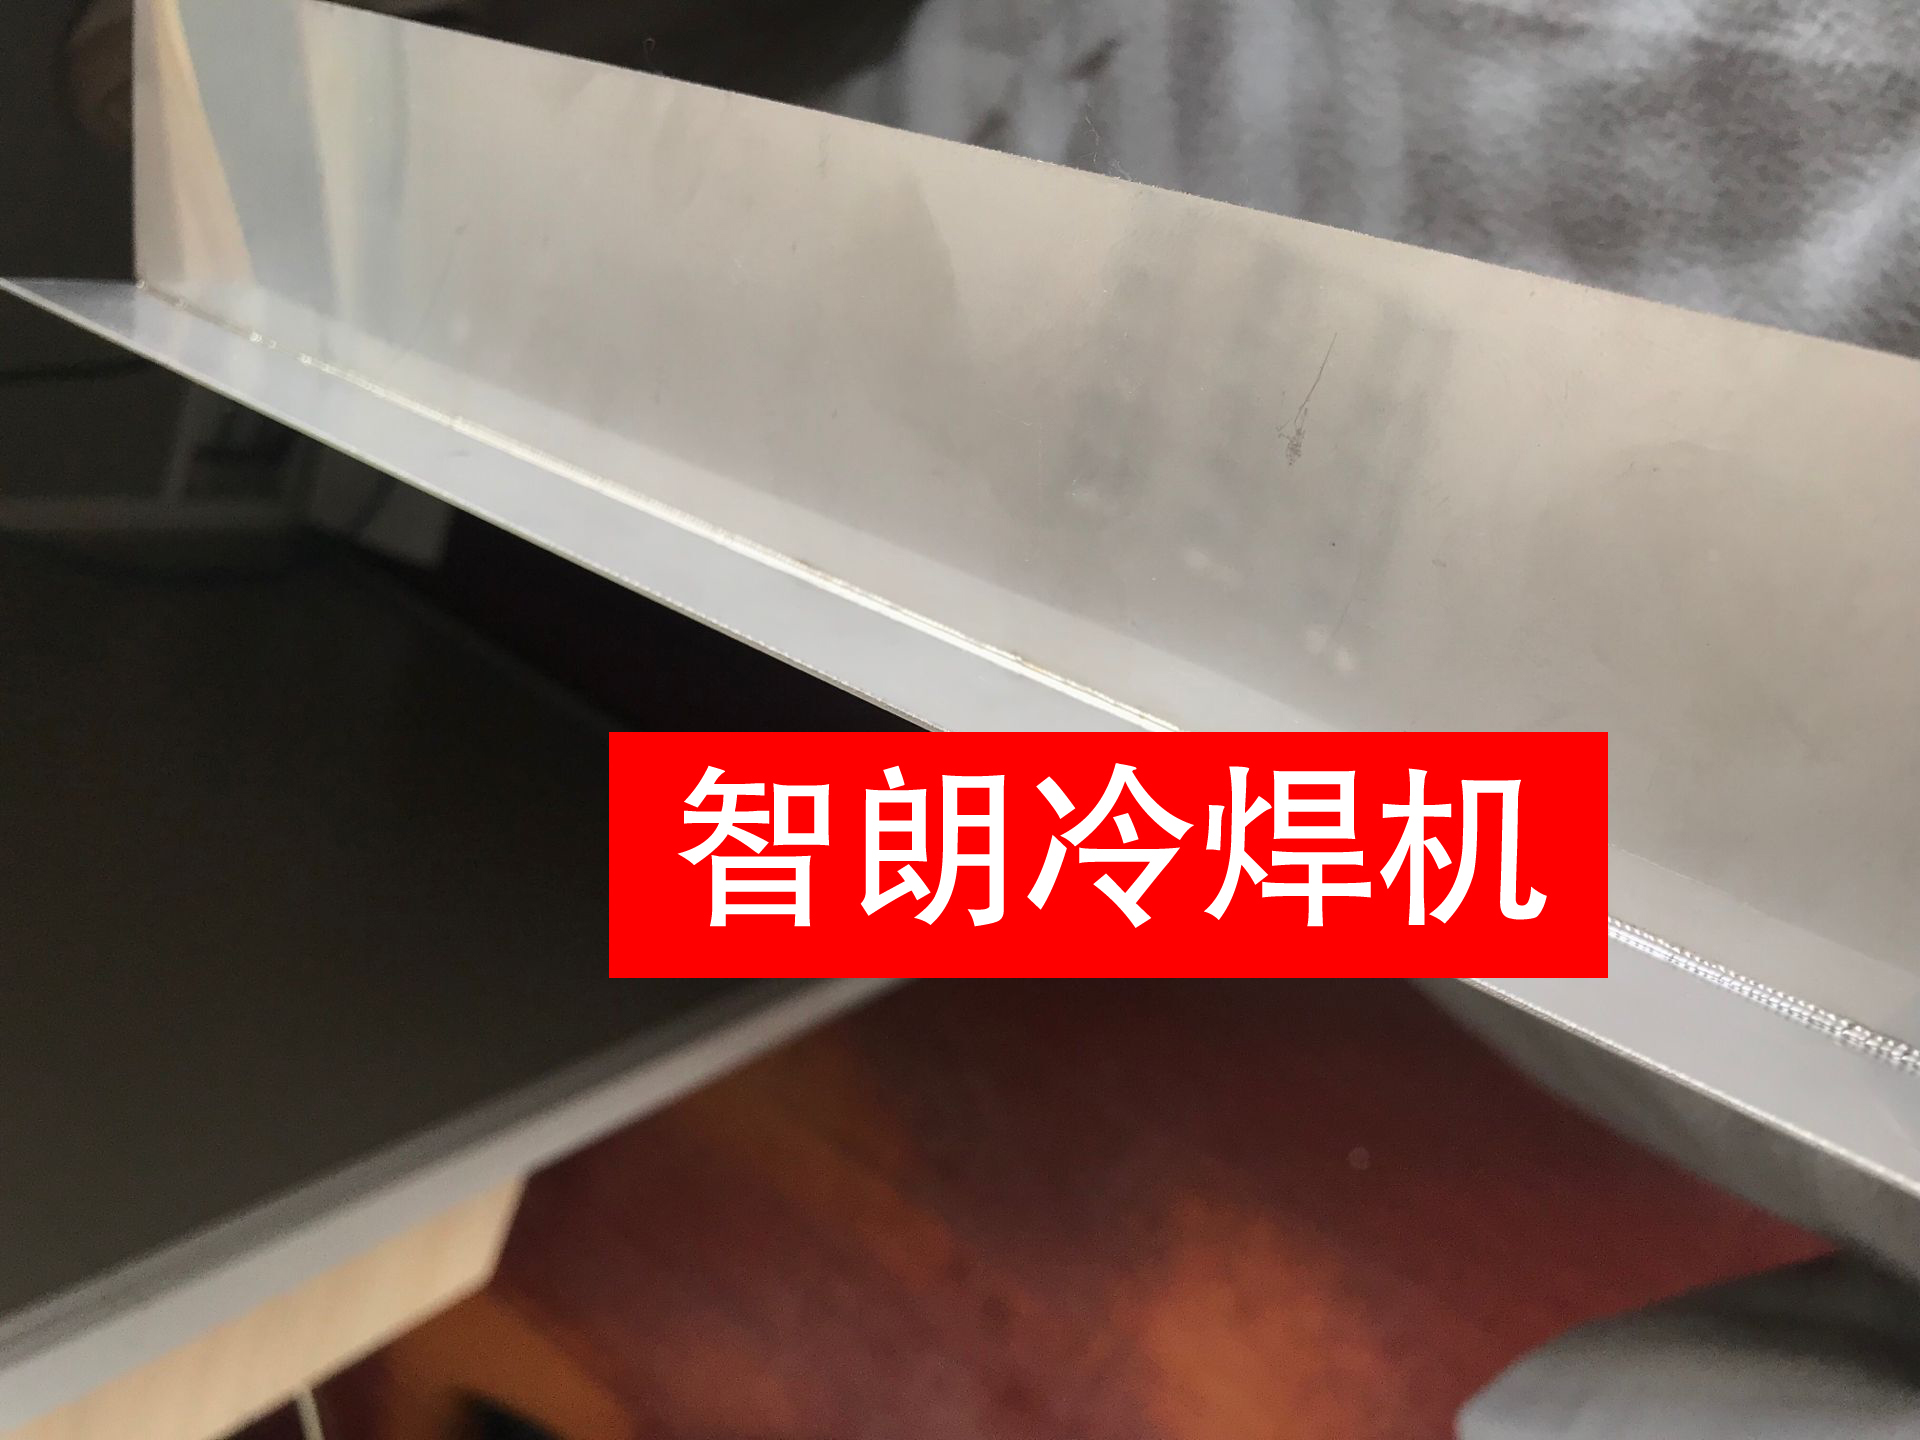 精密薄板冷焊机  精密薄板冷焊机   精密薄板冷焊机  天津不锈钢冷焊